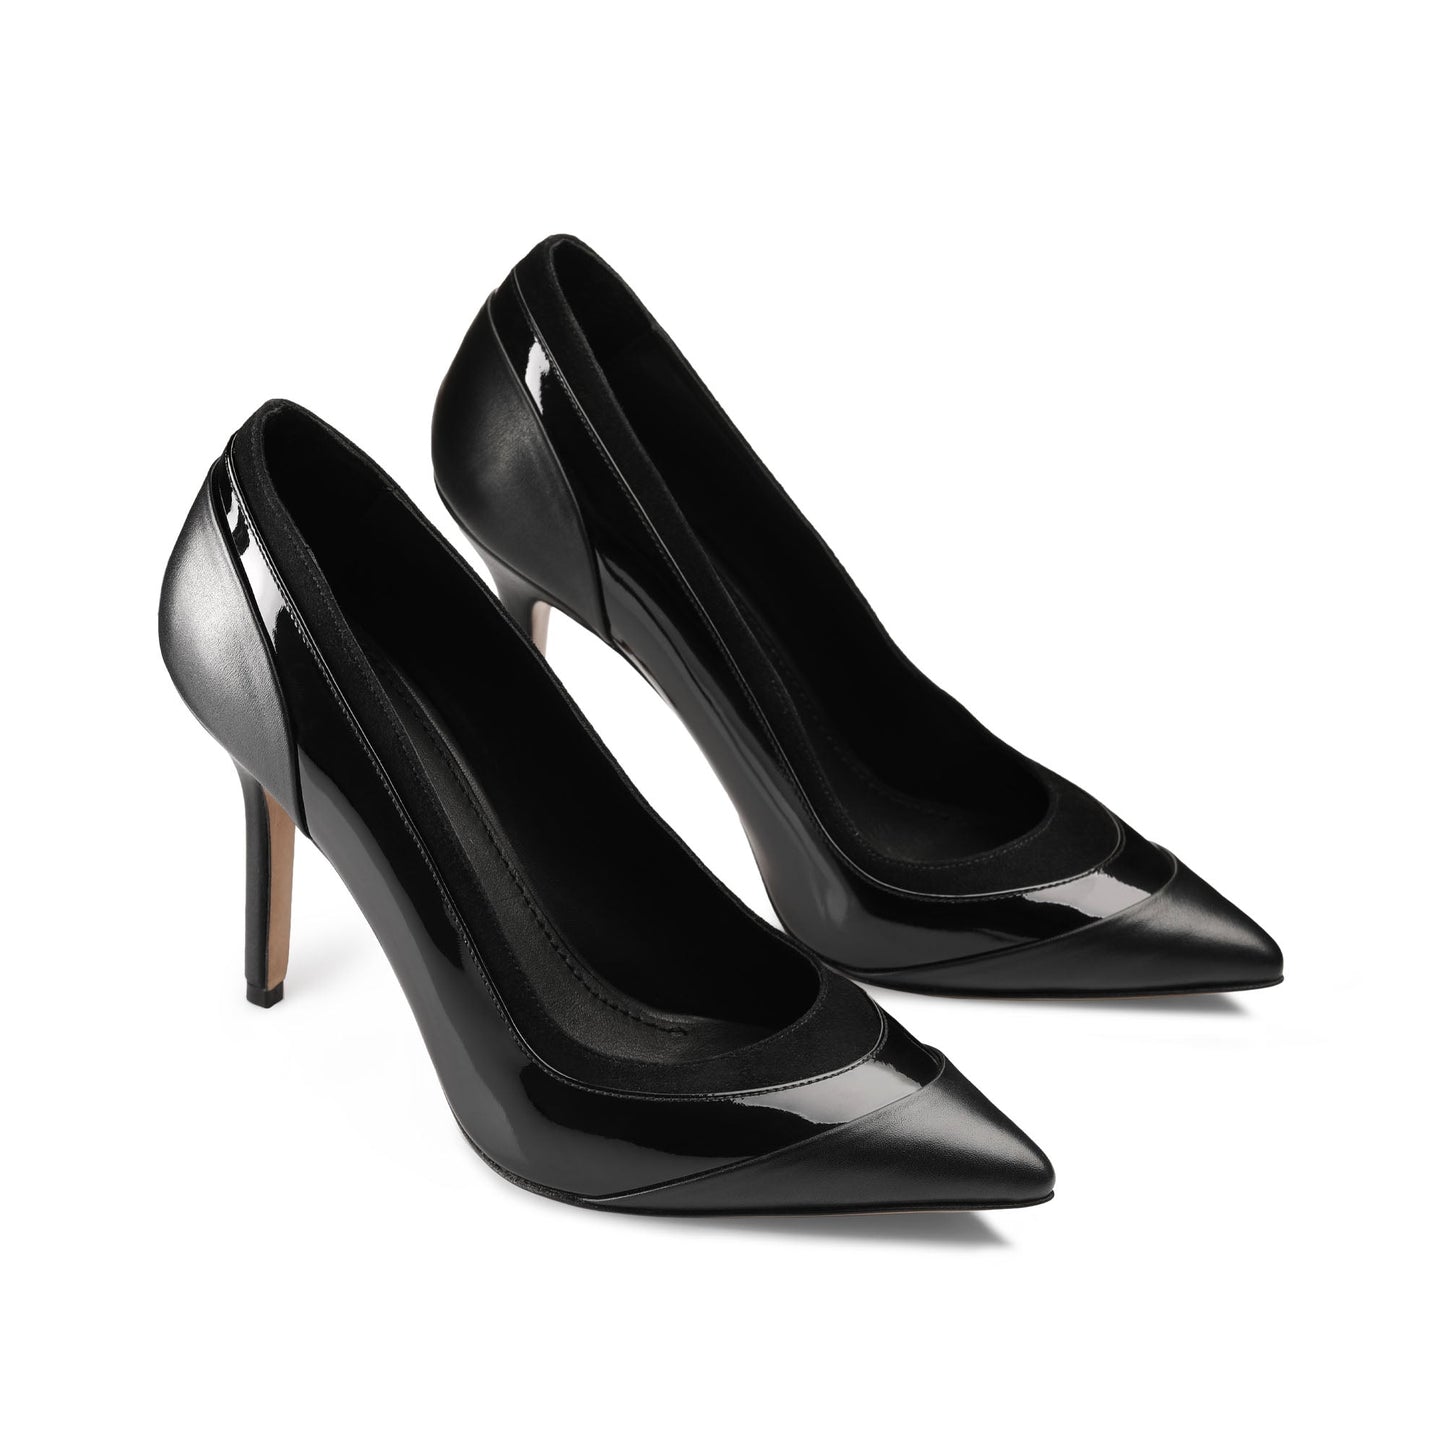 Black high-heel pumps